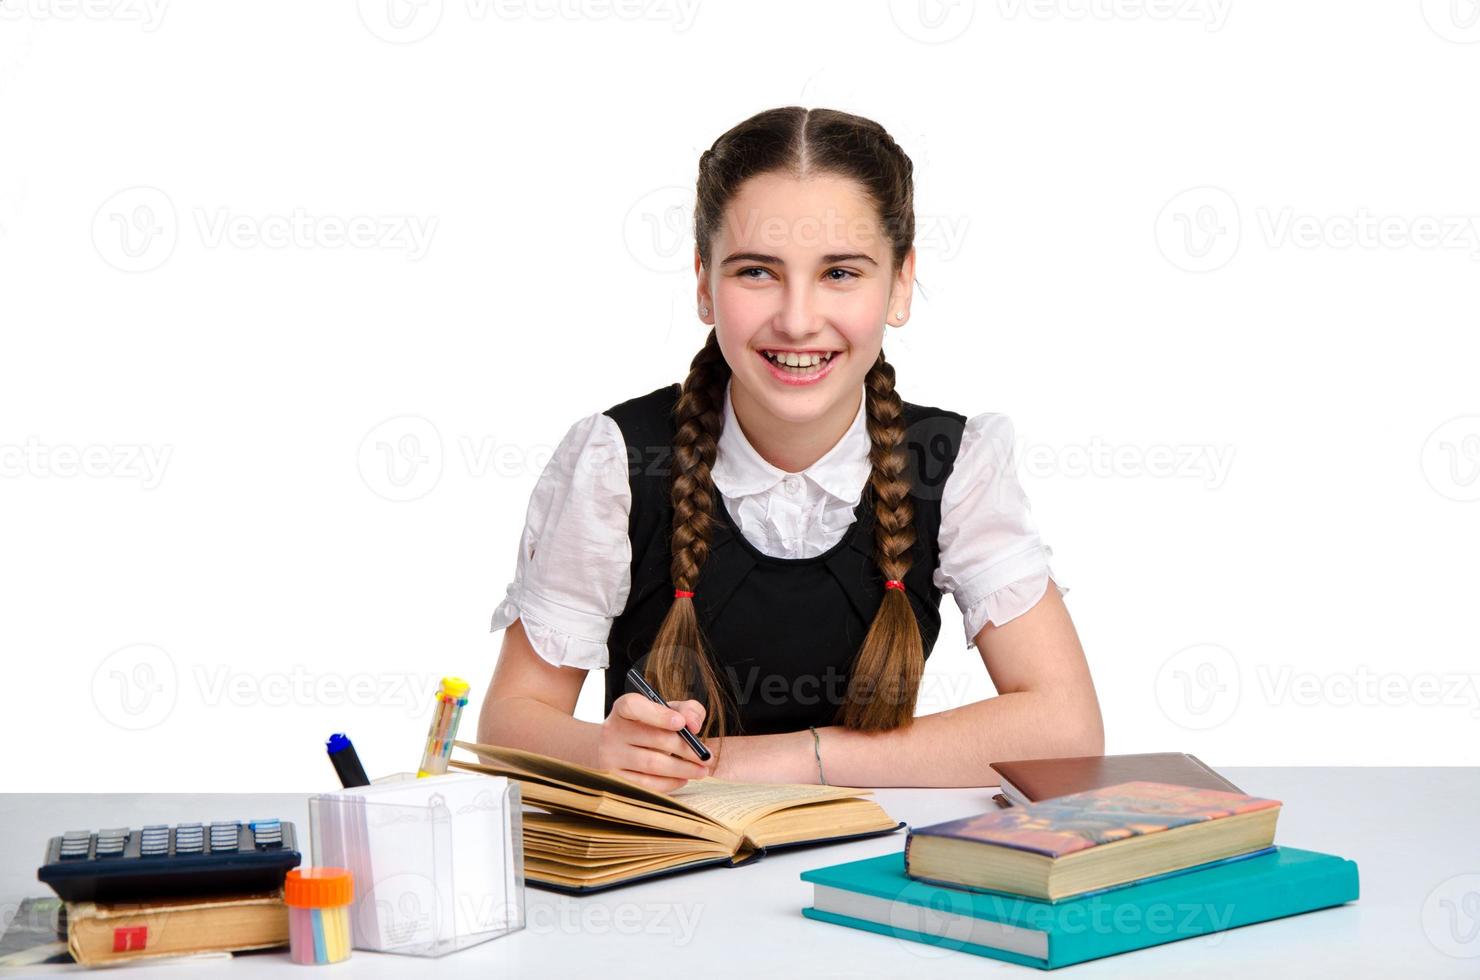 young happy schoolgirl in uniform photo